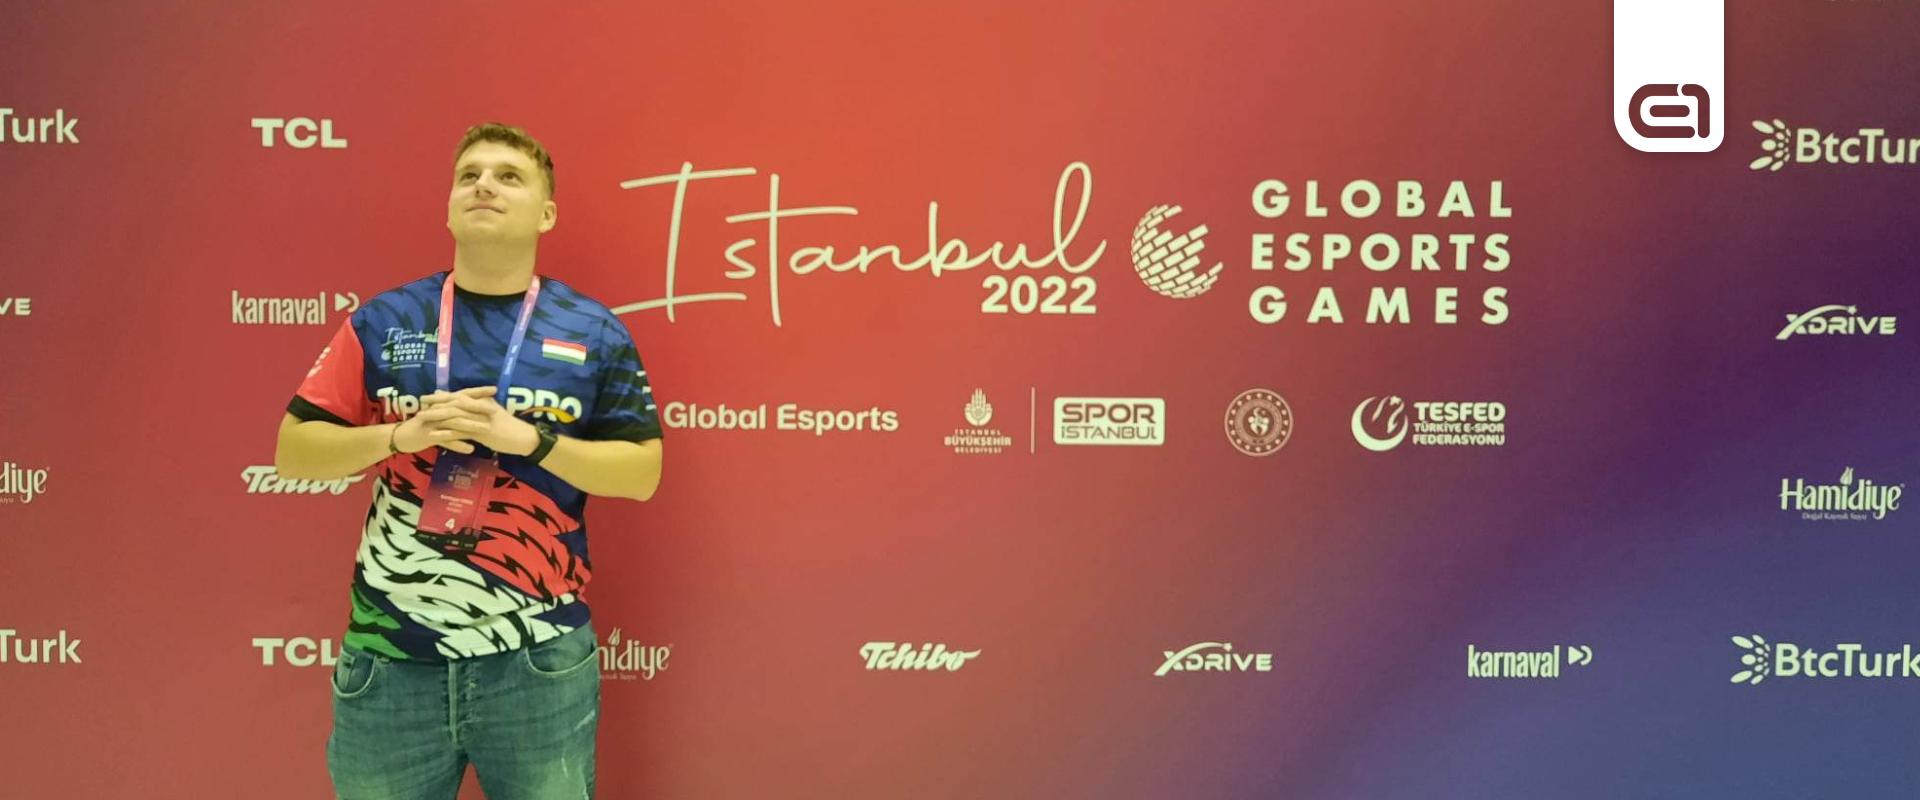 Varga Bende számára véget ért a GEG eFootball versenye Isztambulban